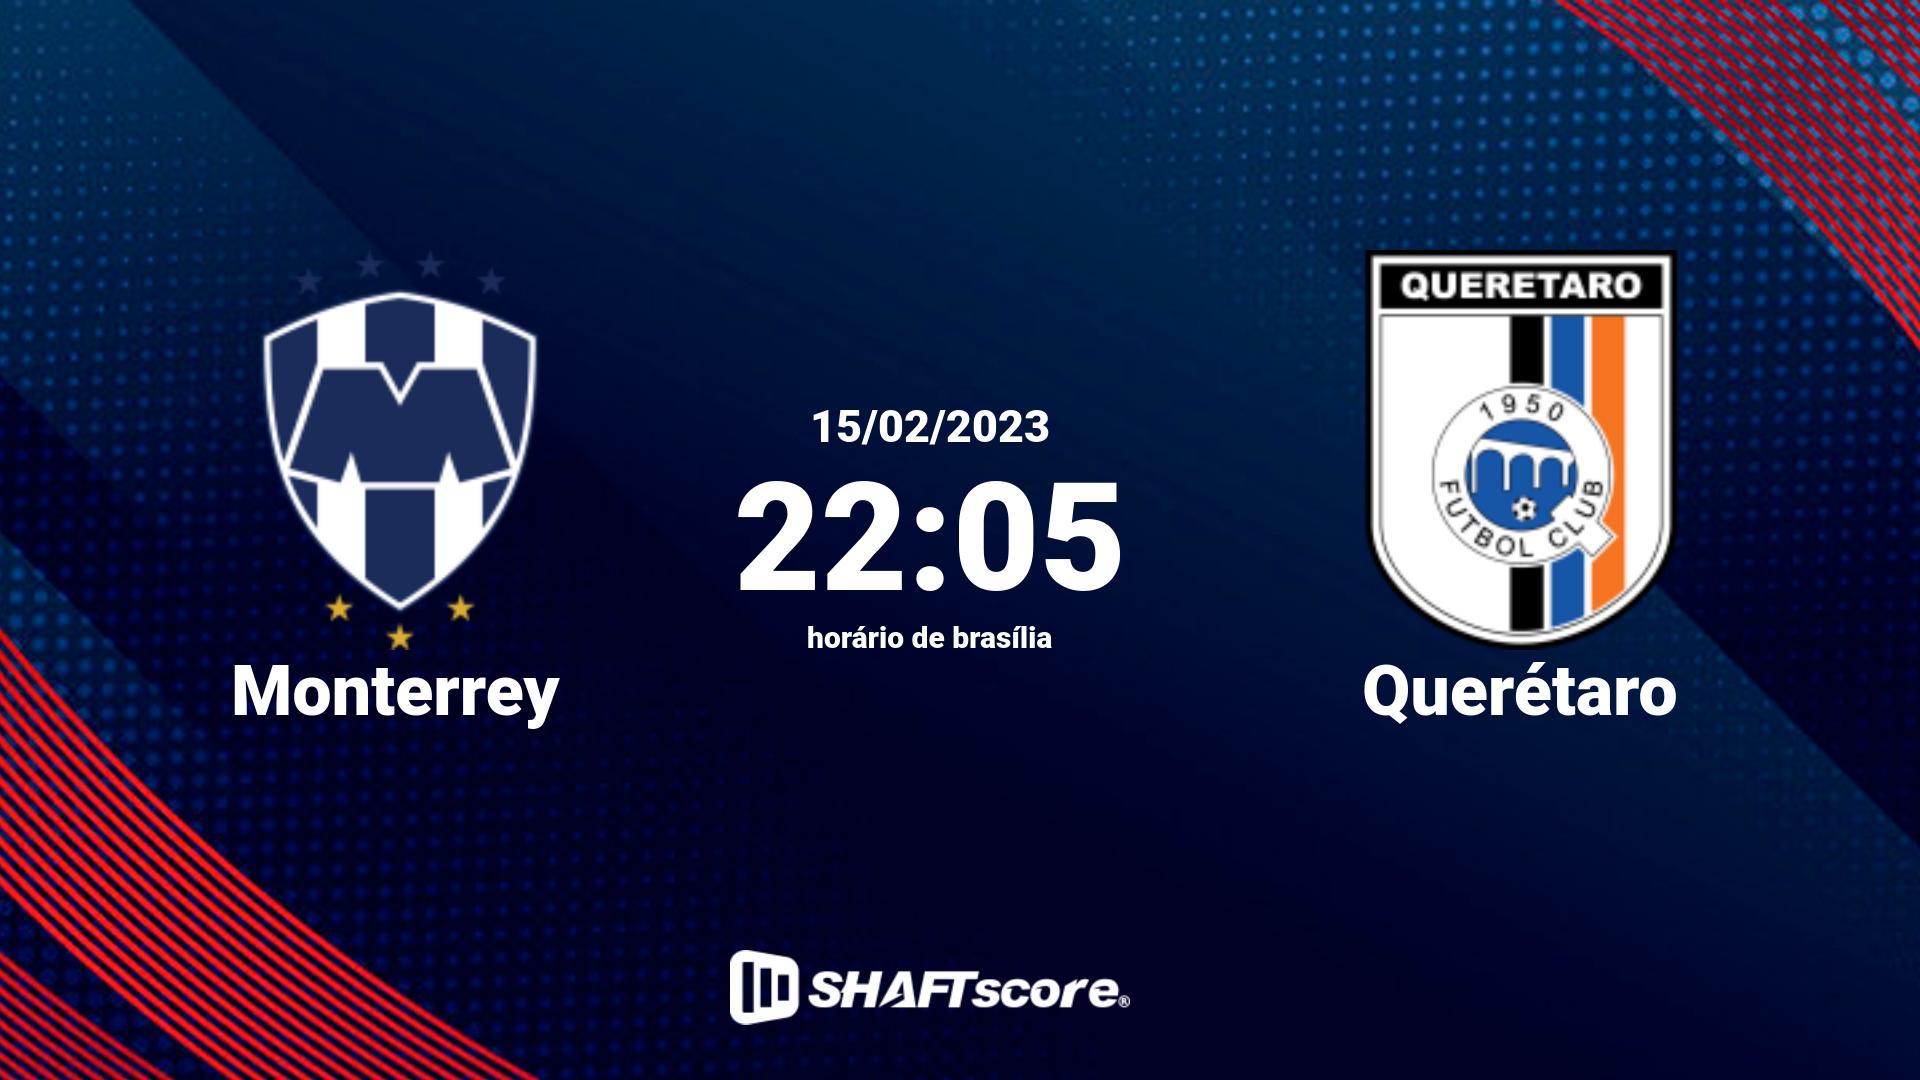 Estatísticas do jogo Monterrey vs Querétaro 15.02 22:05